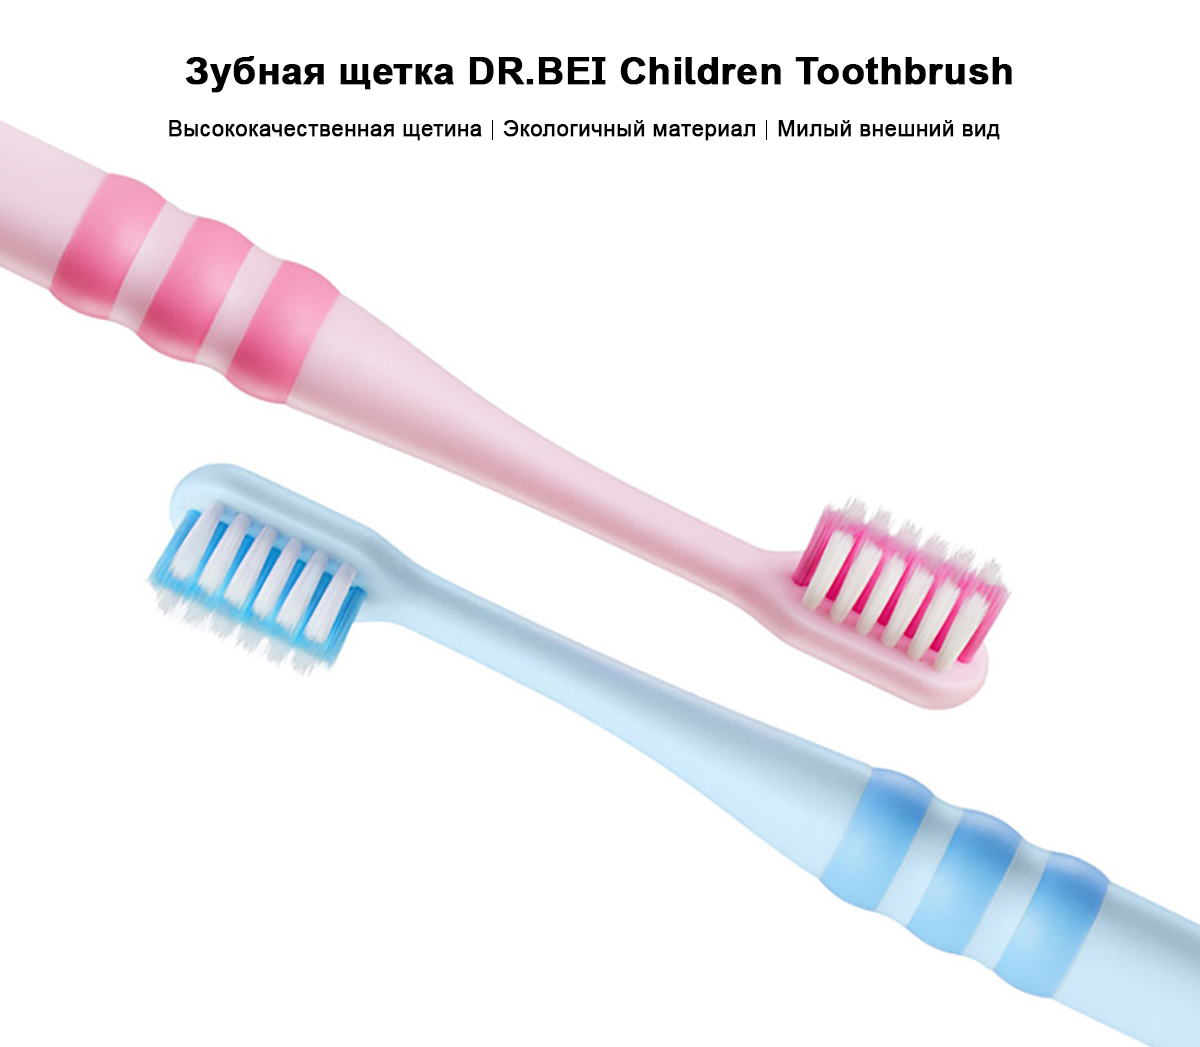 Зубная щетка DR.BEI Children Toothbrush